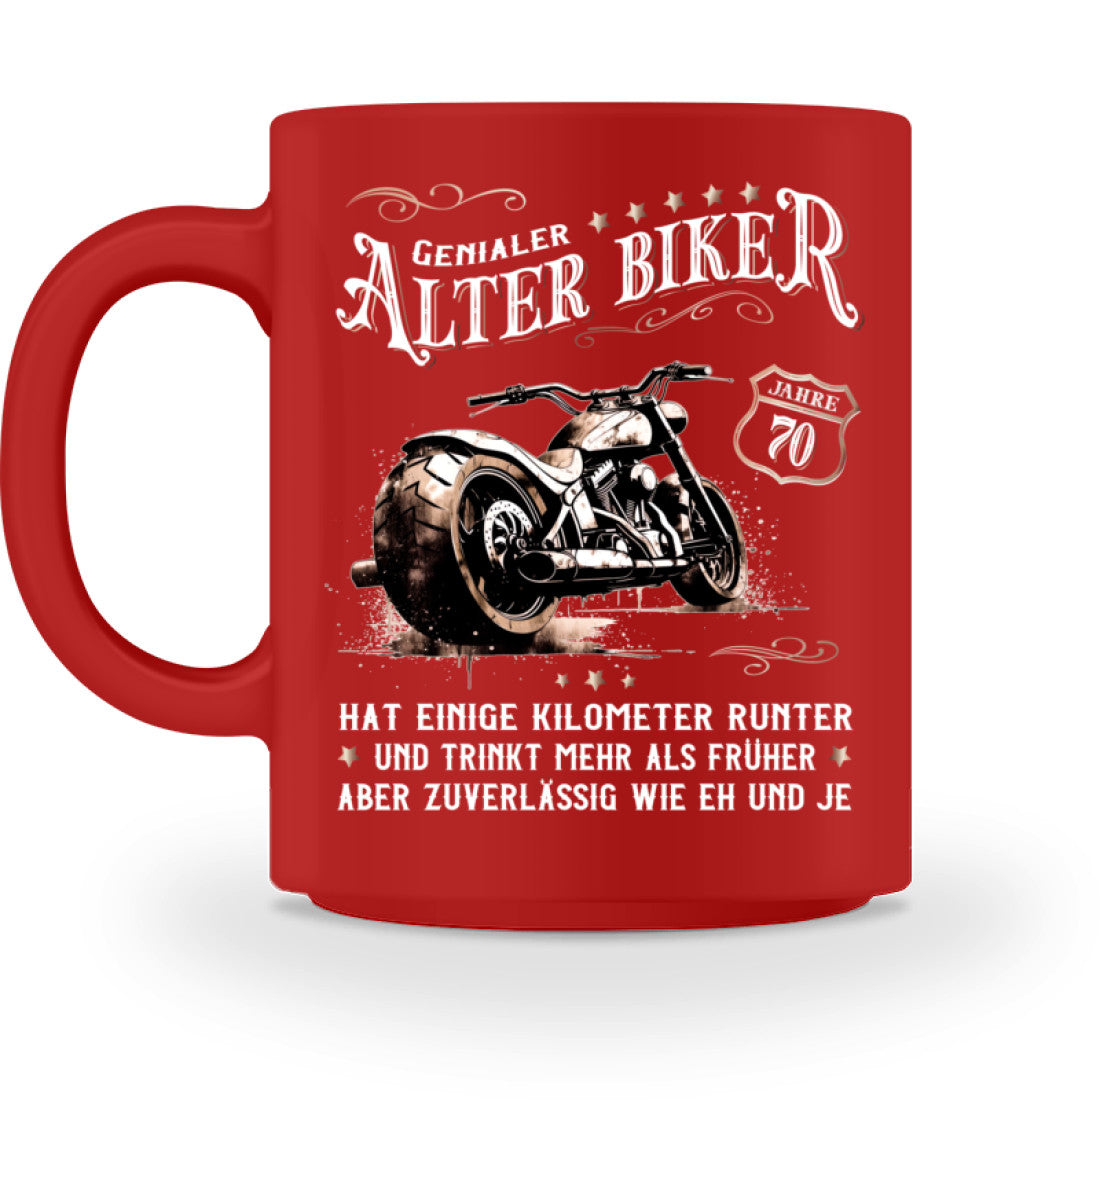 Eine Biker Geburtstags-Tasse für Motorradfahrer, von Wingbikers, mit dem beidseitigen Aufdruck, Alter Biker - 70 Jahre - Einige Kilometer runter, trinkt mehr - aber zuverlässig wie eh und je, in rot.